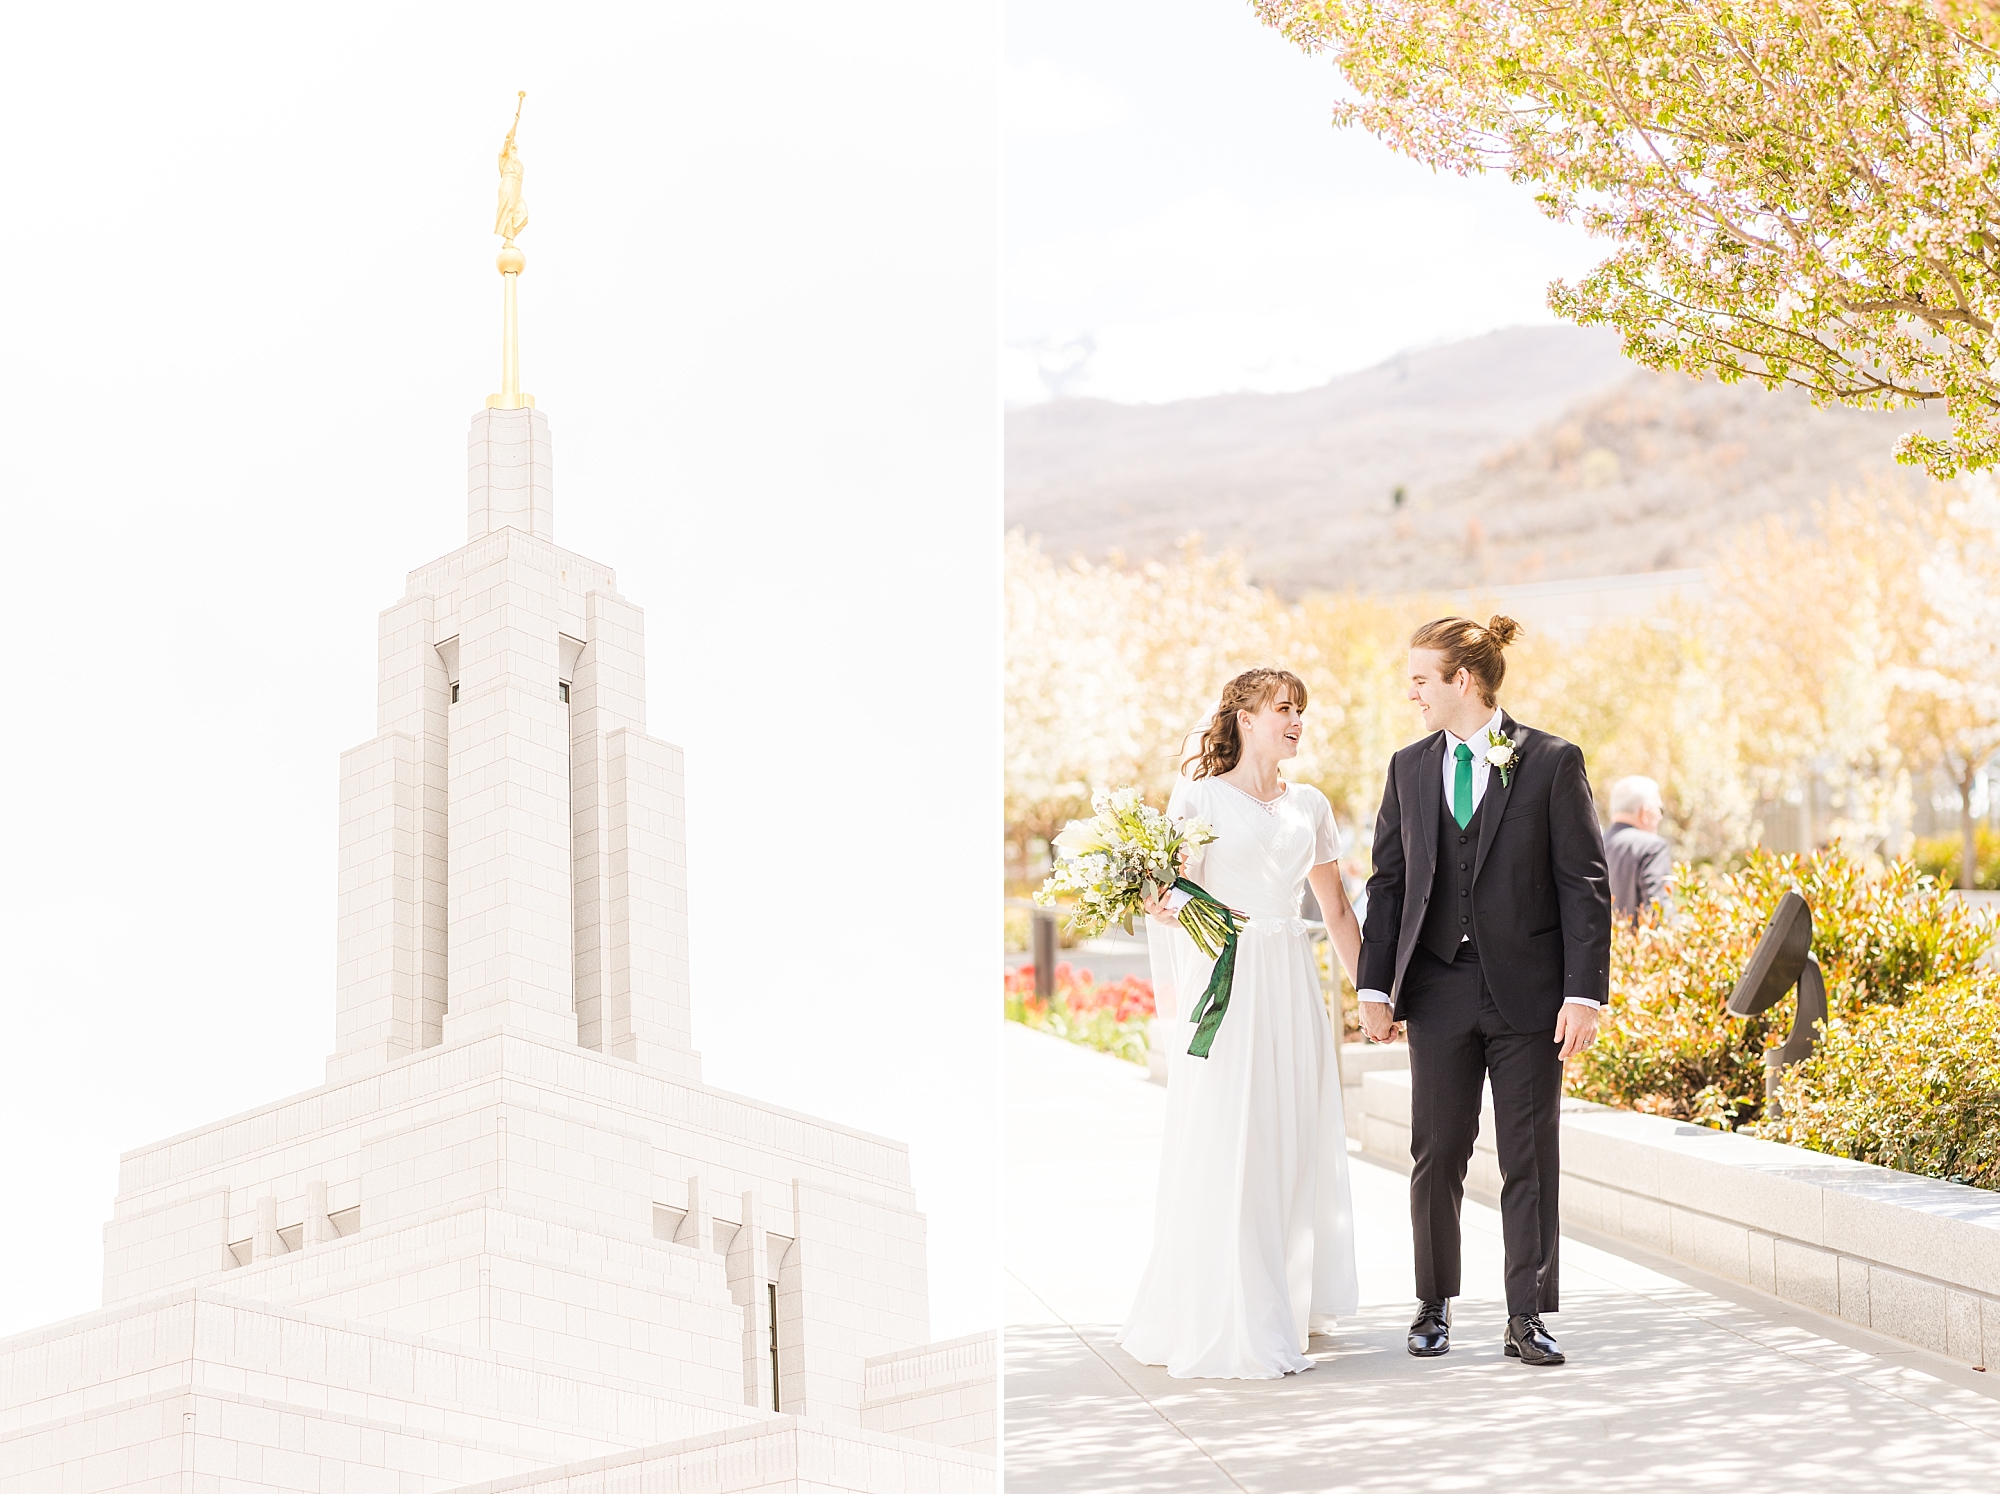 Spring wedding at the Draper Utah Temple